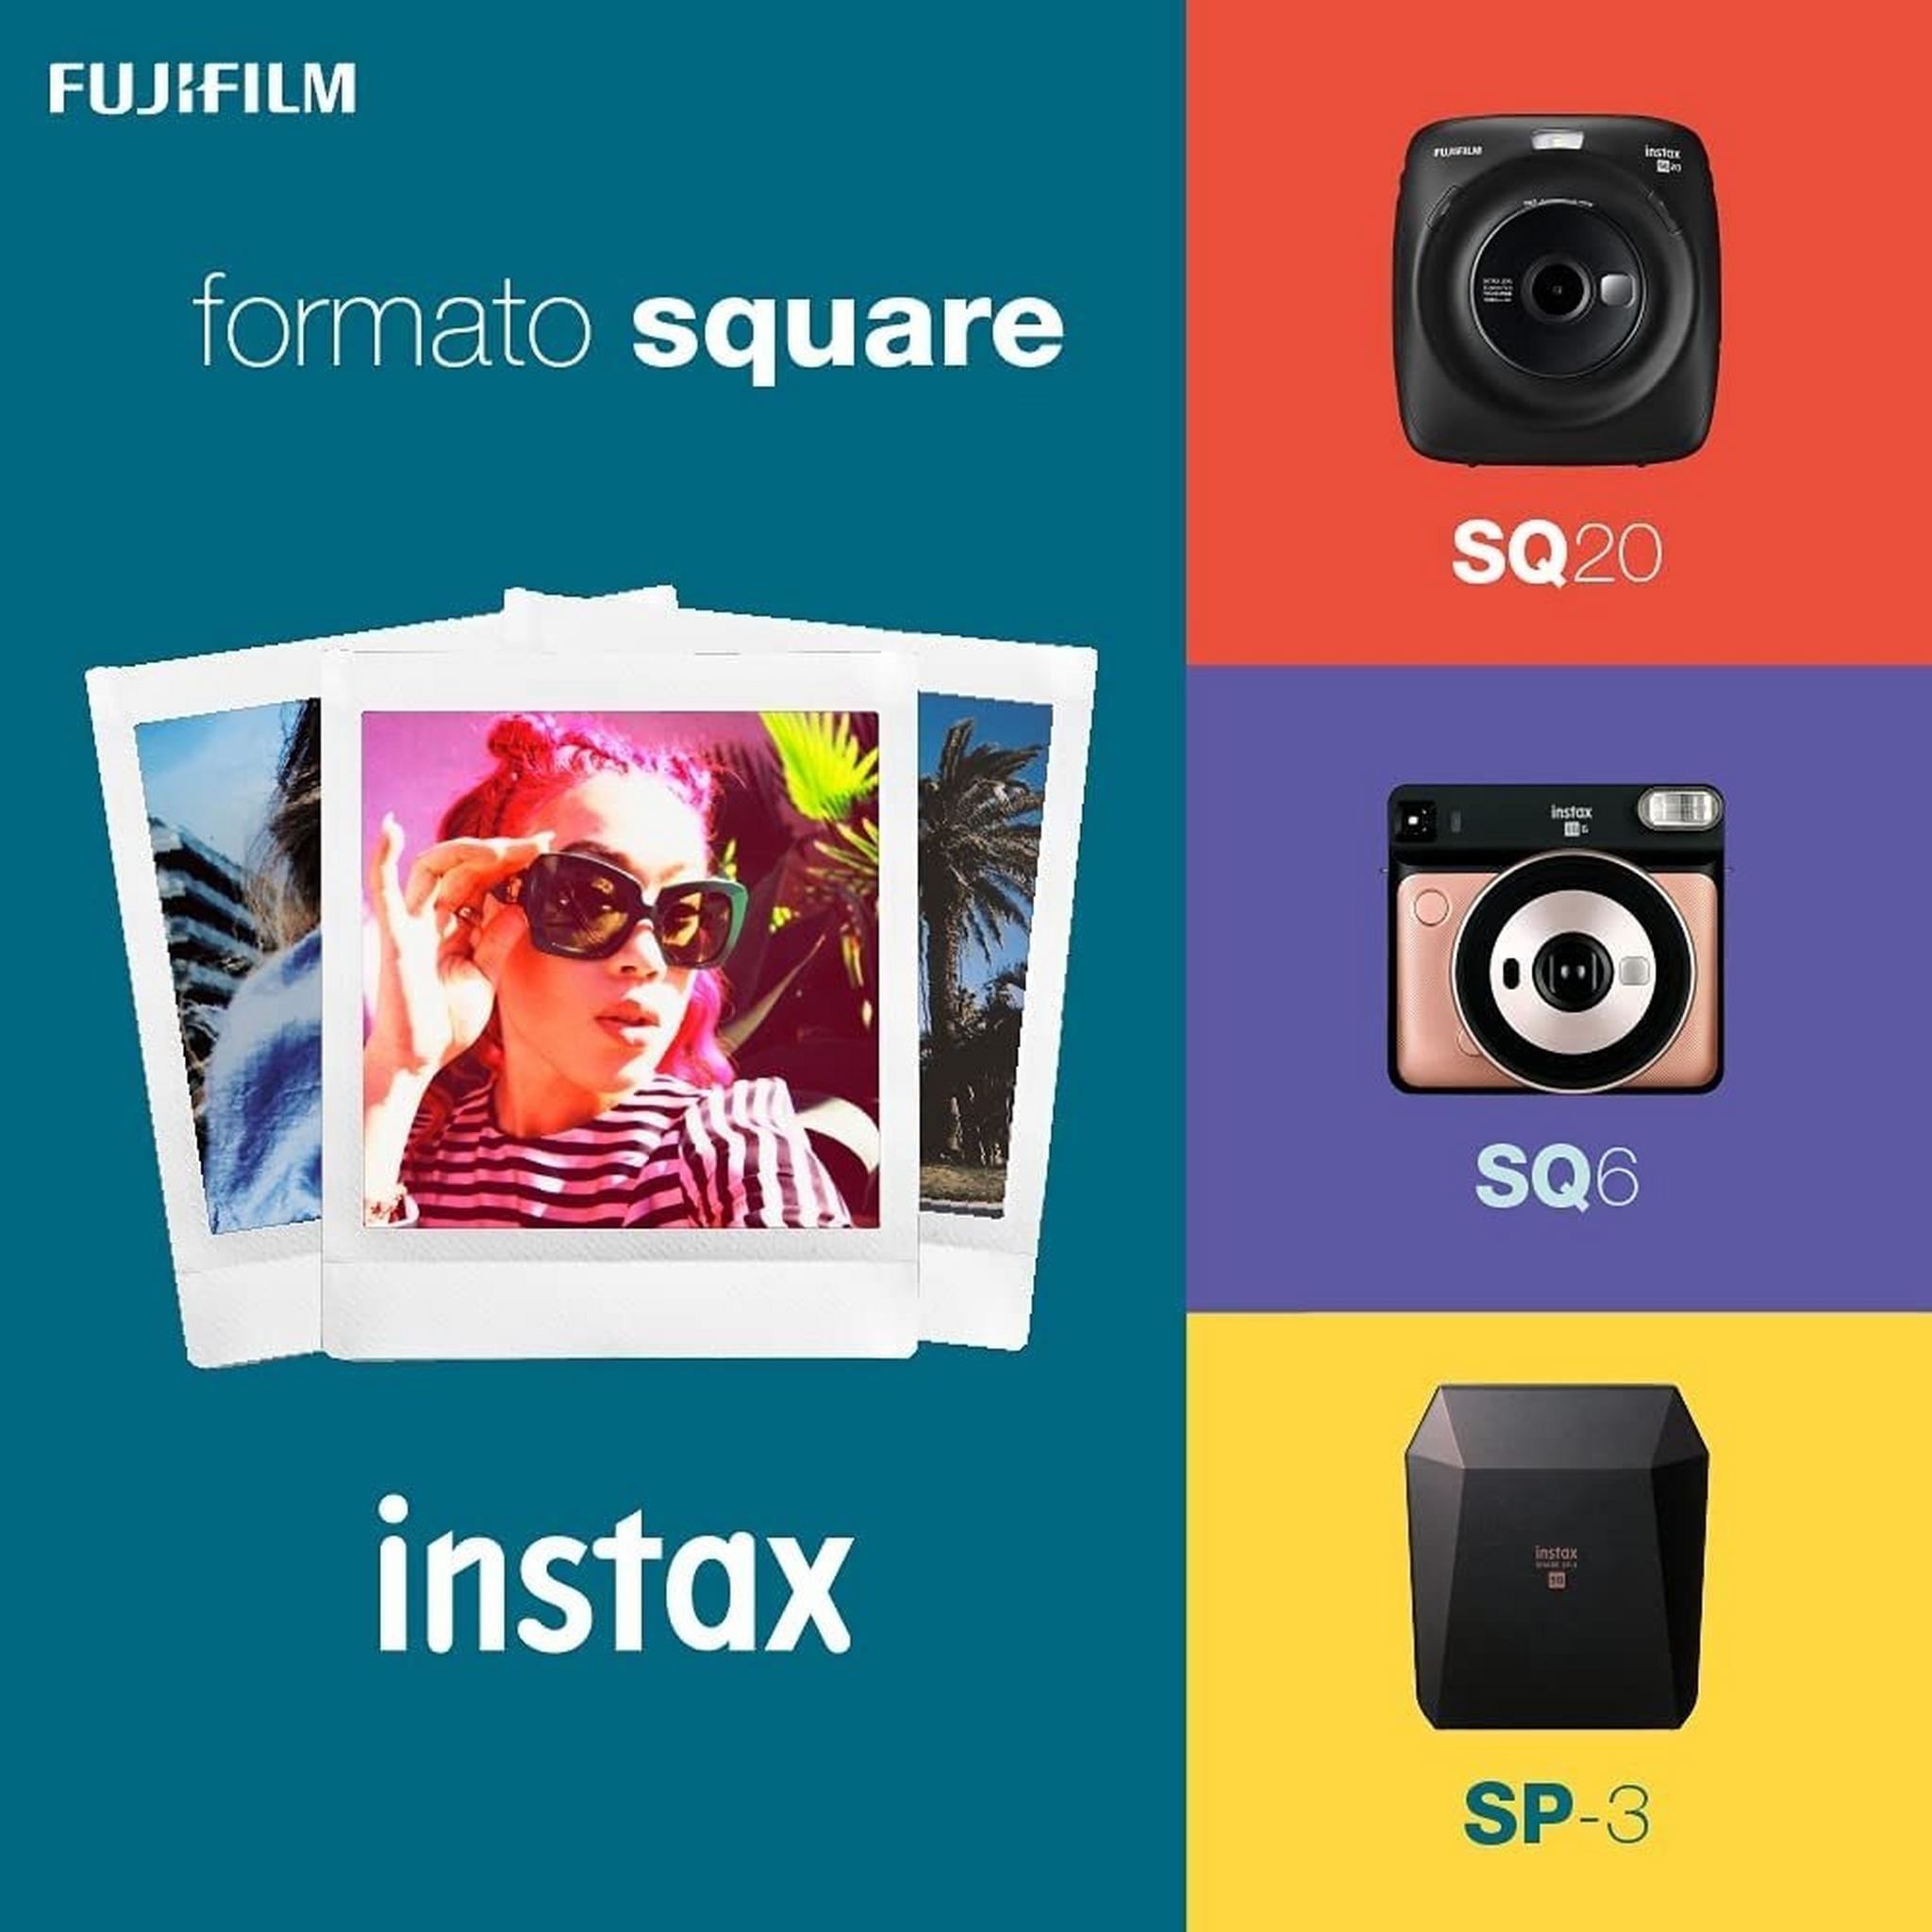 Fujifilm Instax Square Rainbow Film - 10 Exposures (FUJI PH BOX-YL)